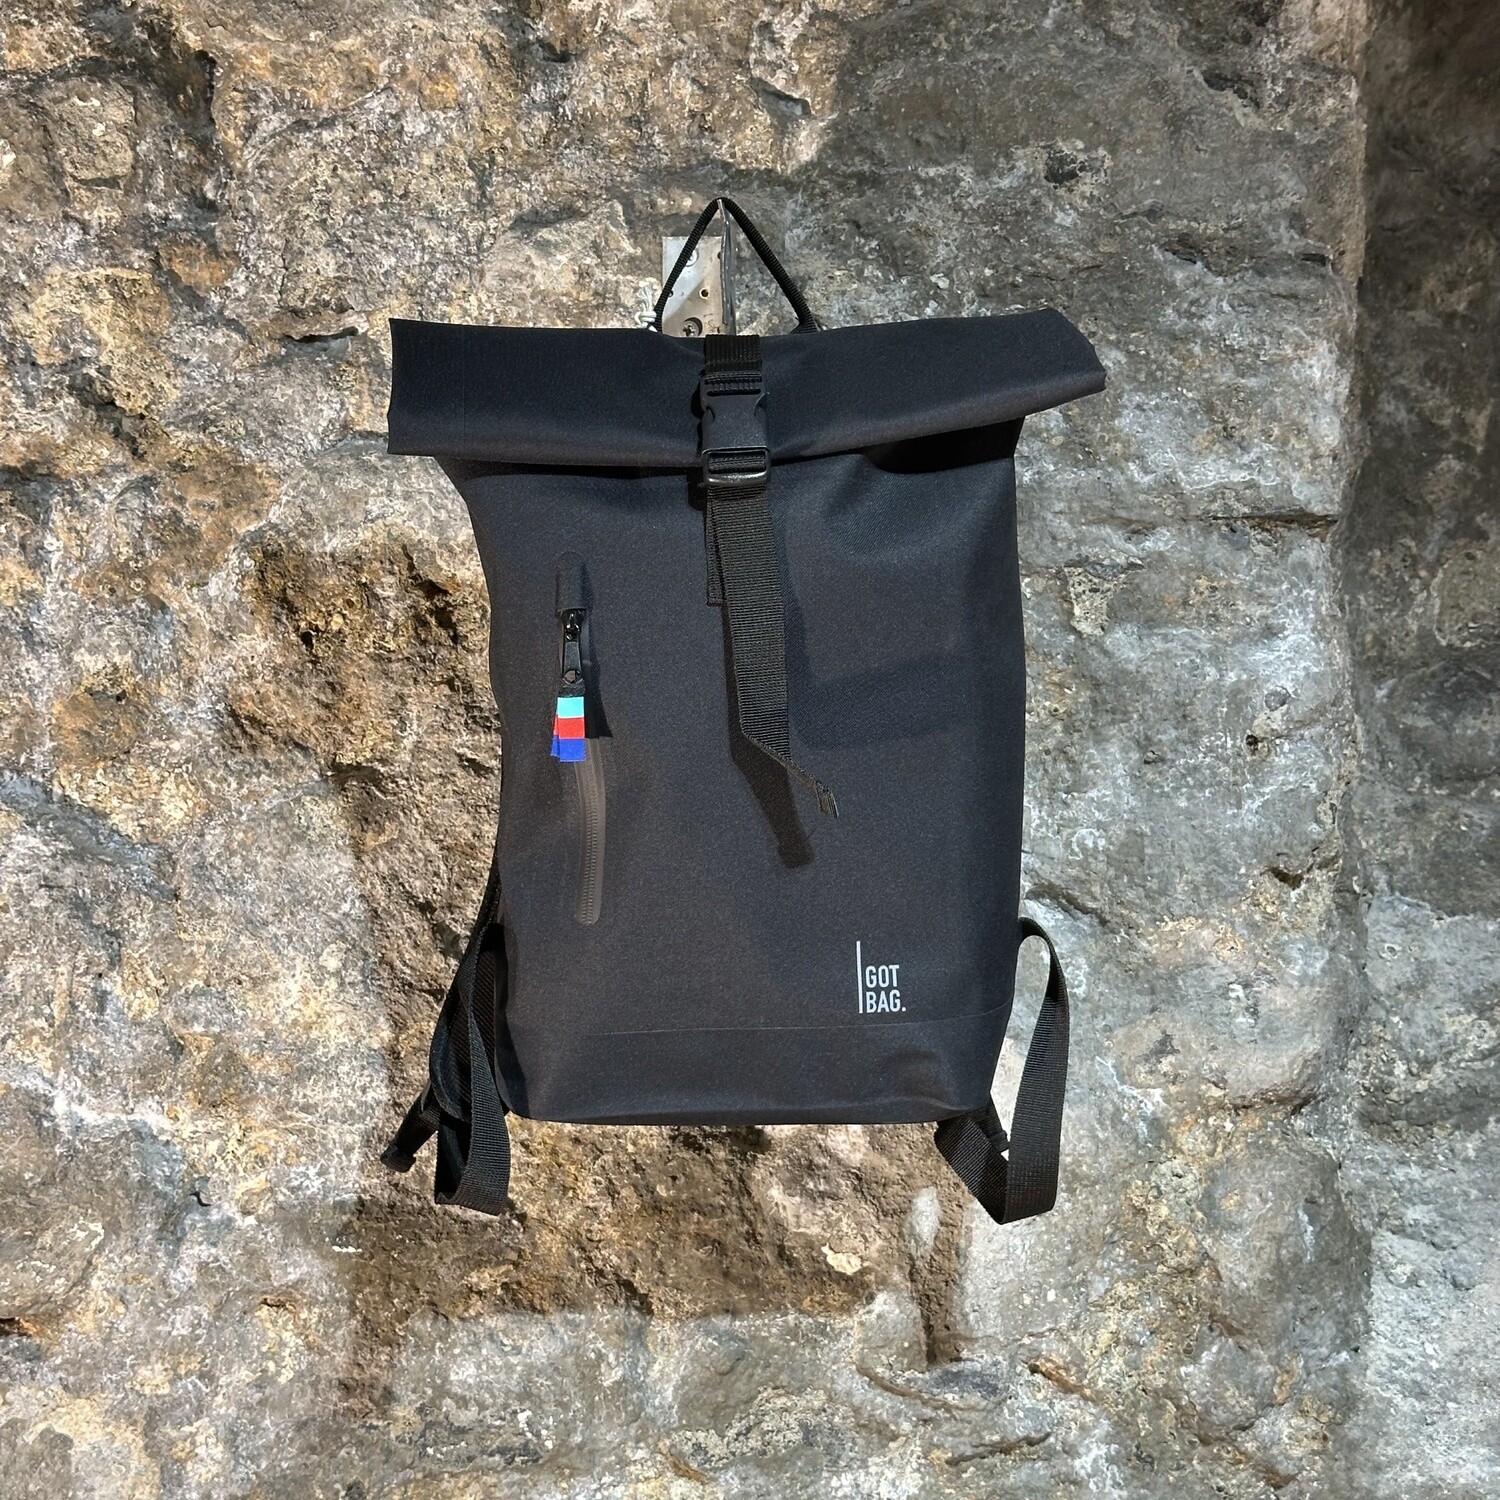 Got Bag — Rolltop small black